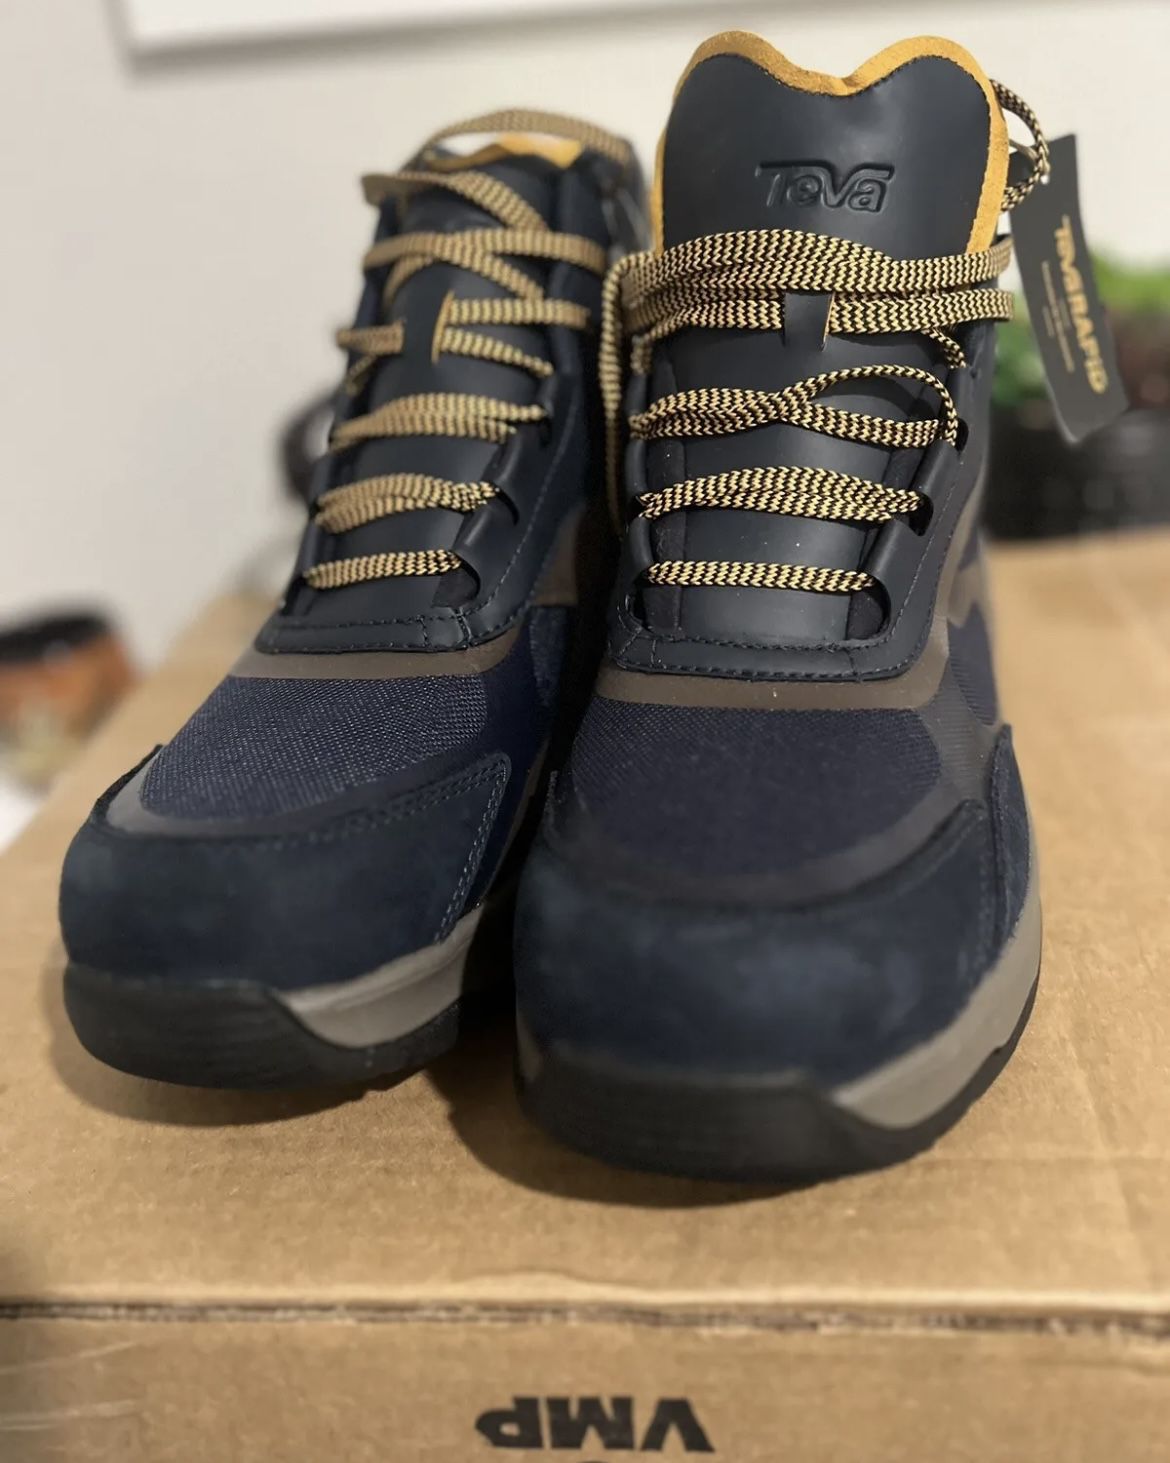 TEVA Men’s Hiking Boots Size 9.5